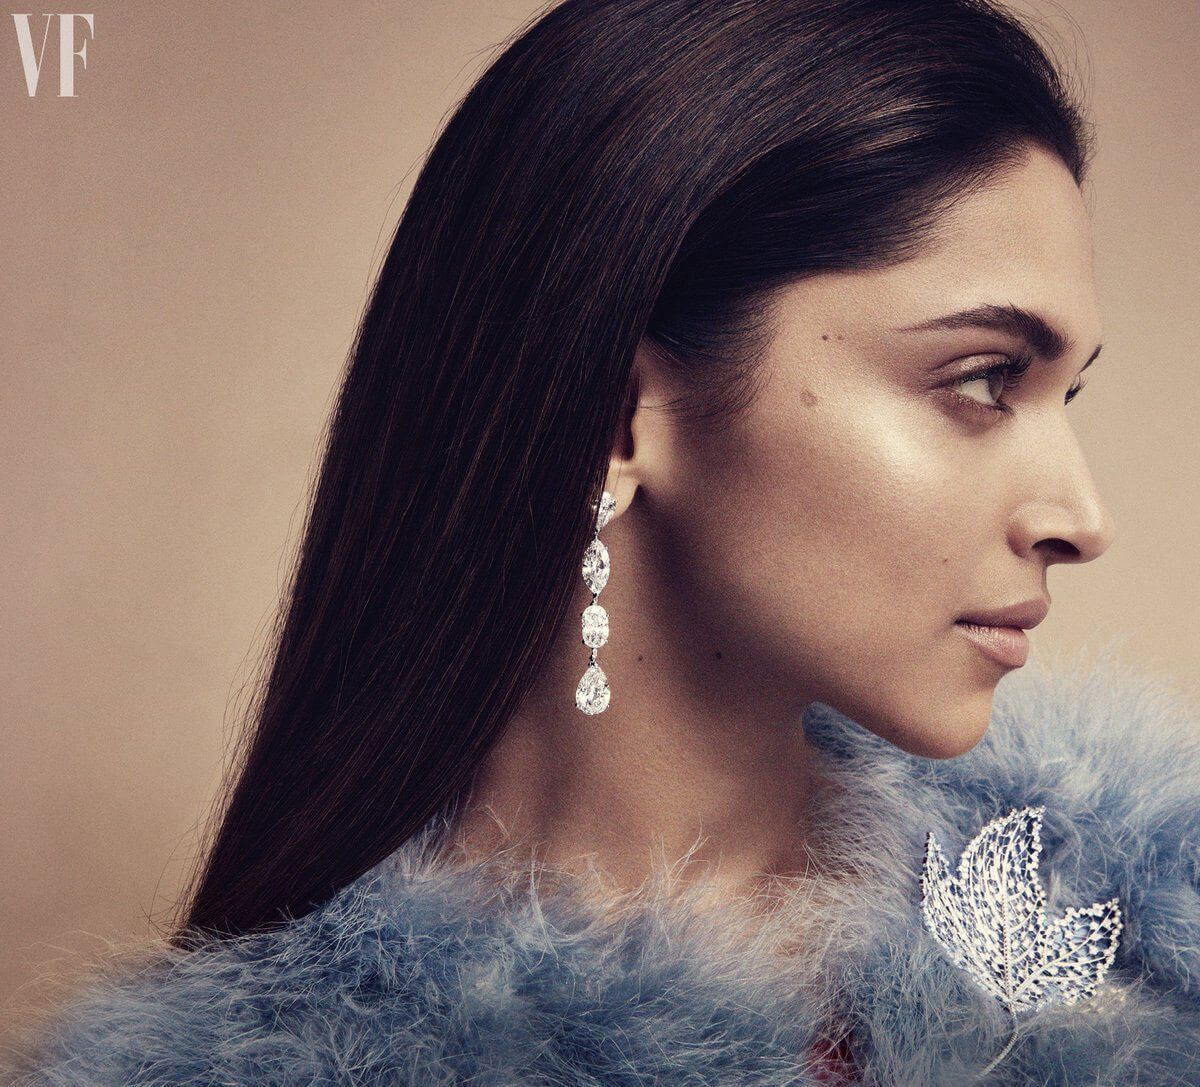 Deepika Padukone Photoshoot for Vanity Fair on Jewellery, August 2017 1